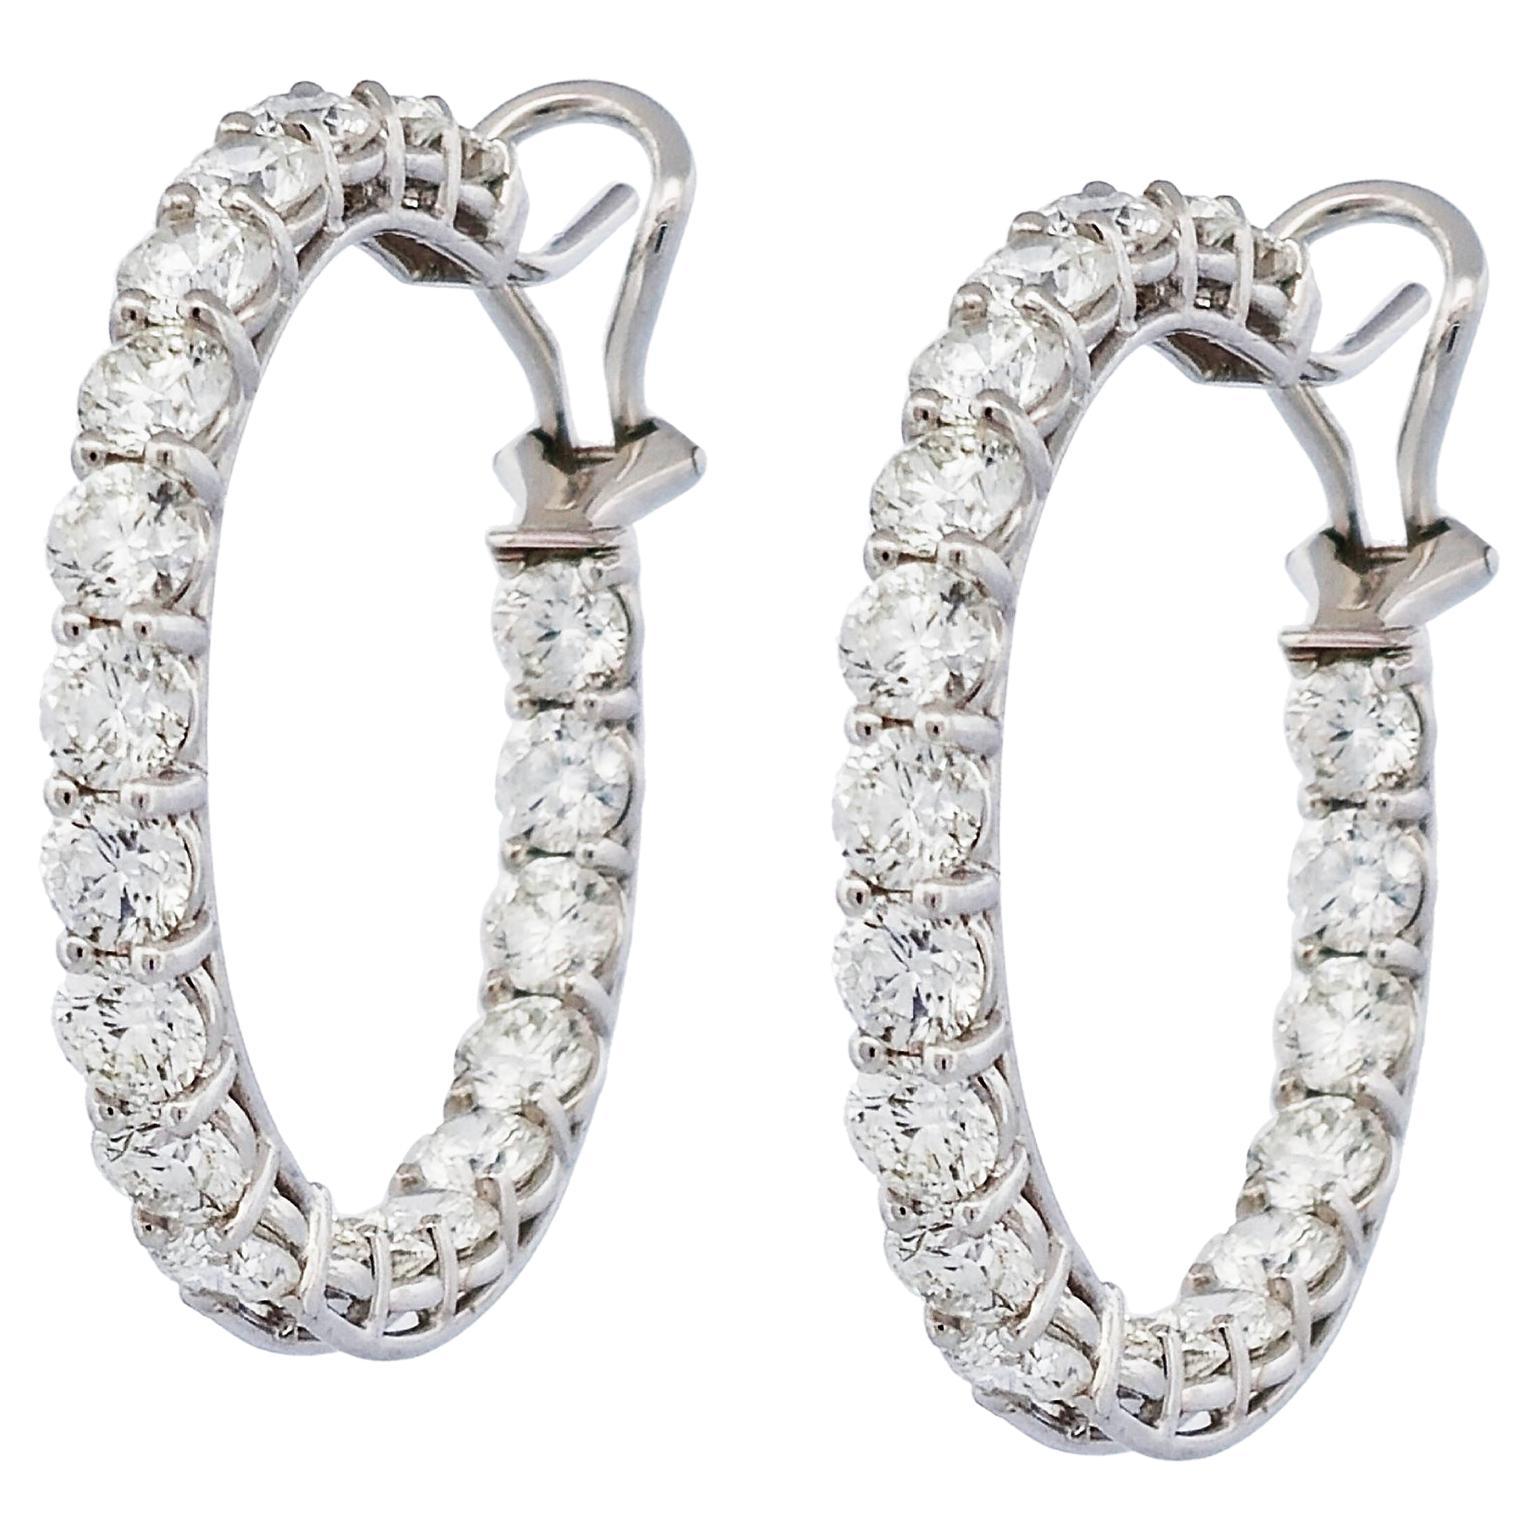 Handgefertigte Diamant-Ohrringe aus 18 Karat Weißgold mit Zackenbesatz